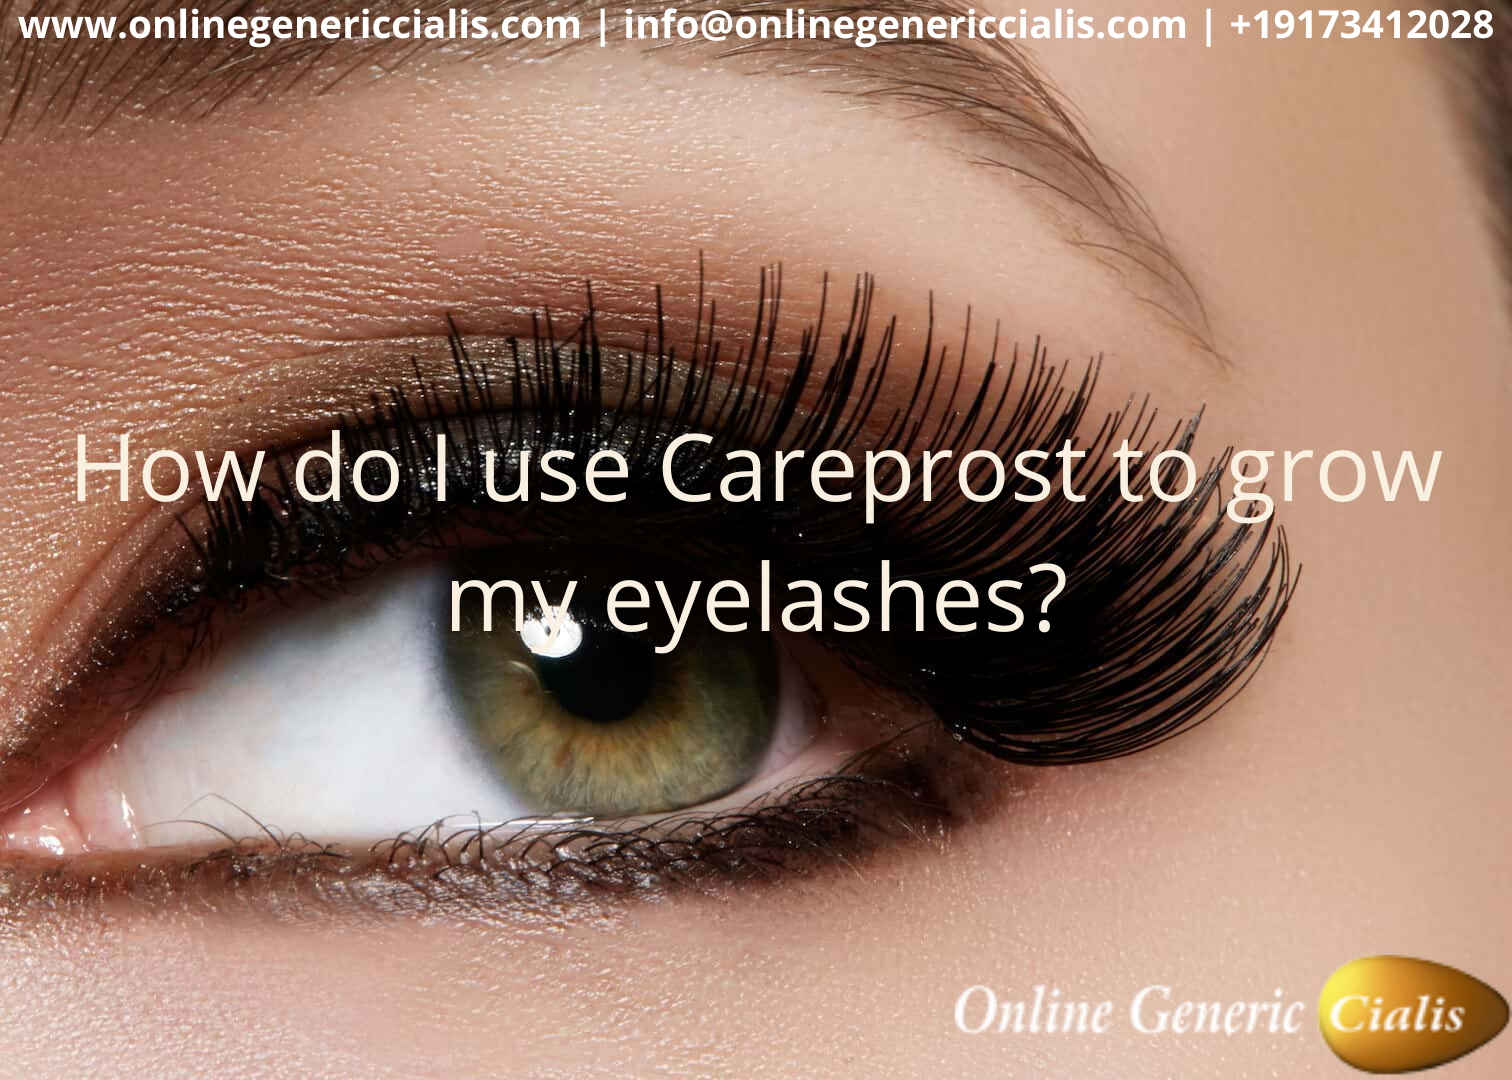 How do I use Careprost to grow my eyelashes?